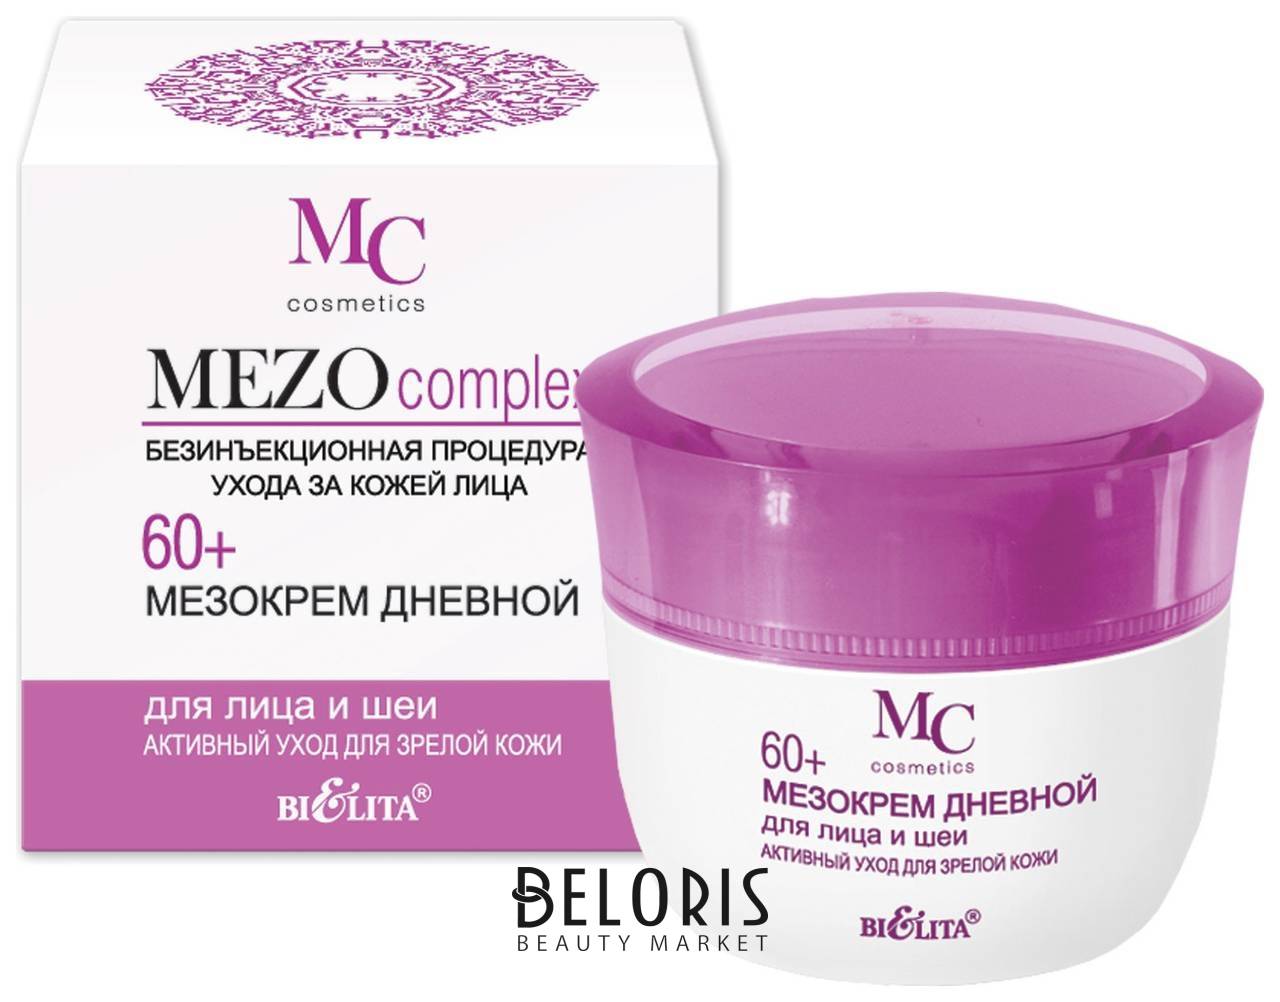 Мезокрем для лица и шеи дневной Активный уход для зрелой кожи Mezocomplex 60+ Белита - Витекс MEZOcomplex